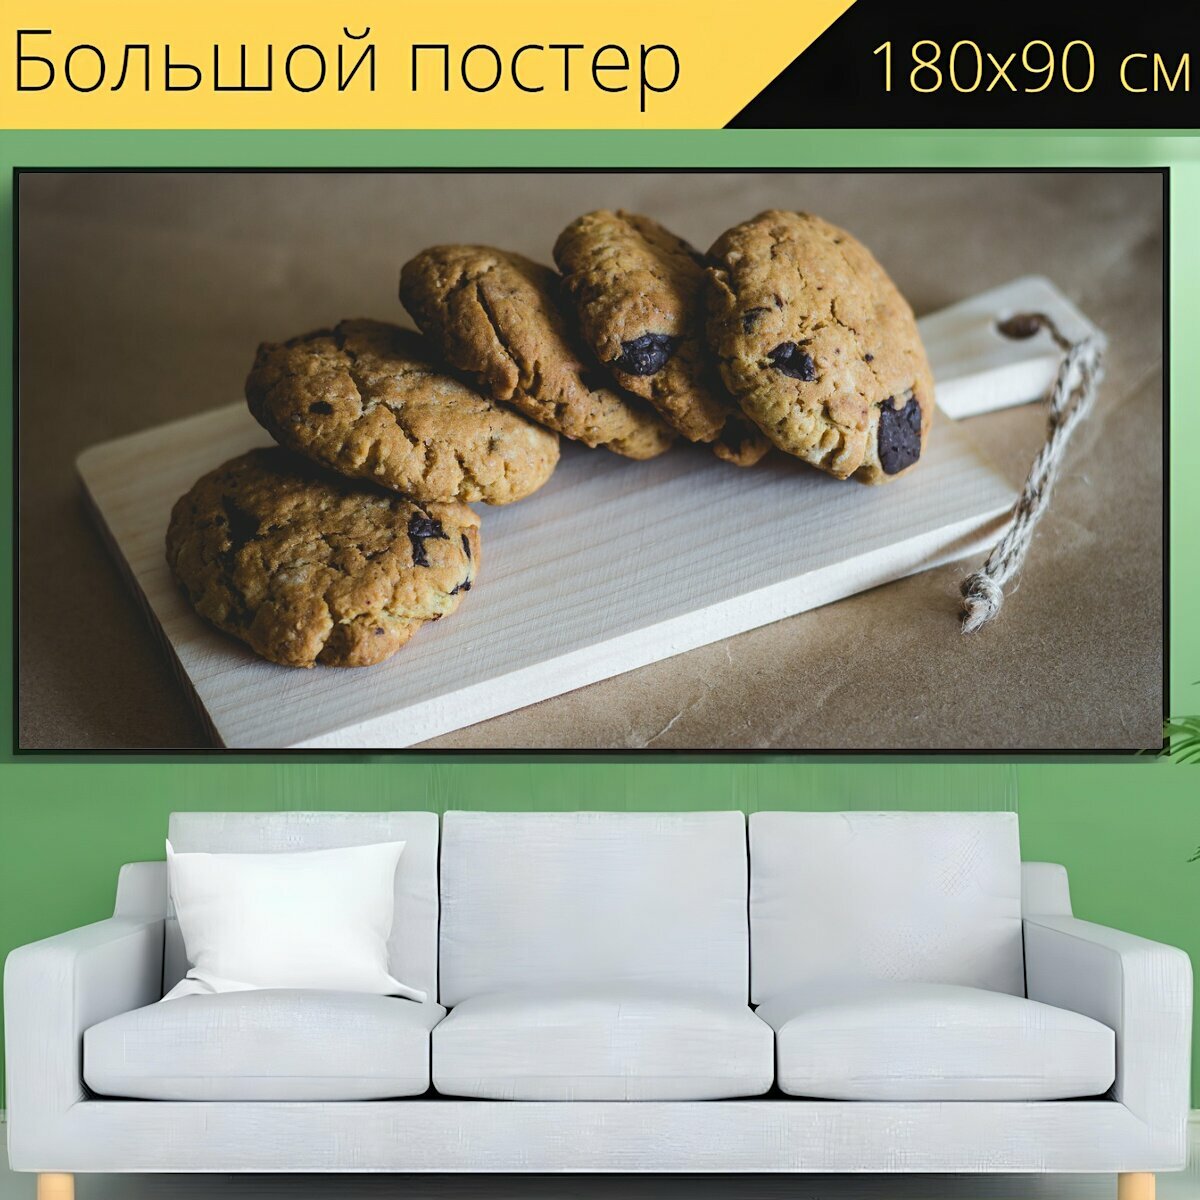 Большой постер "Печенье, самодельный, шоколад чипсы" 180 x 90 см. для интерьера